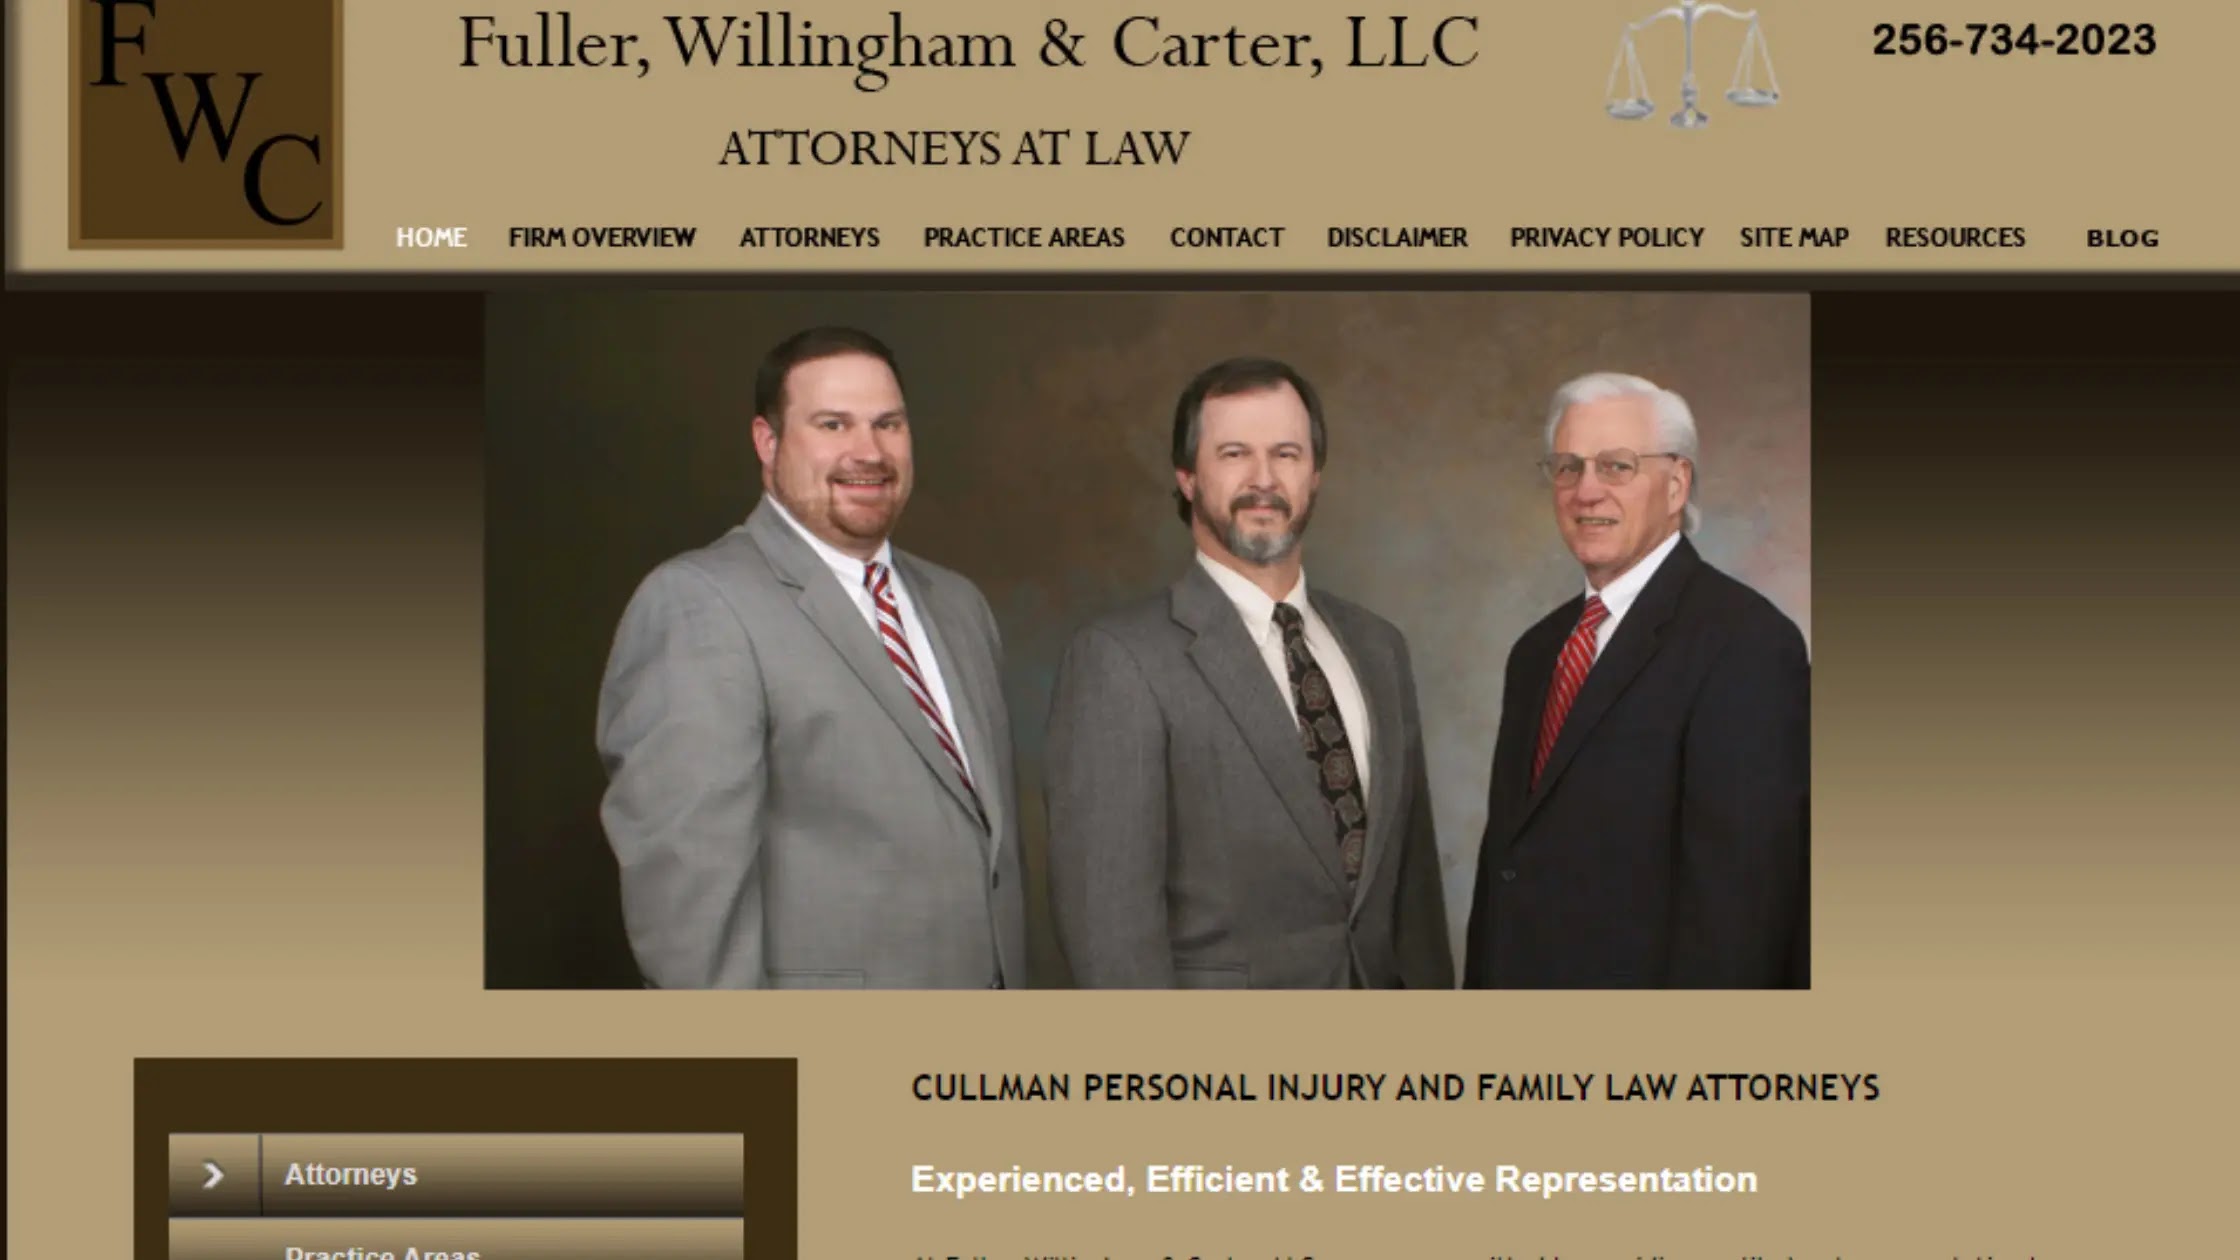 Fuller, Willingham, Fuller & Carter, LLC